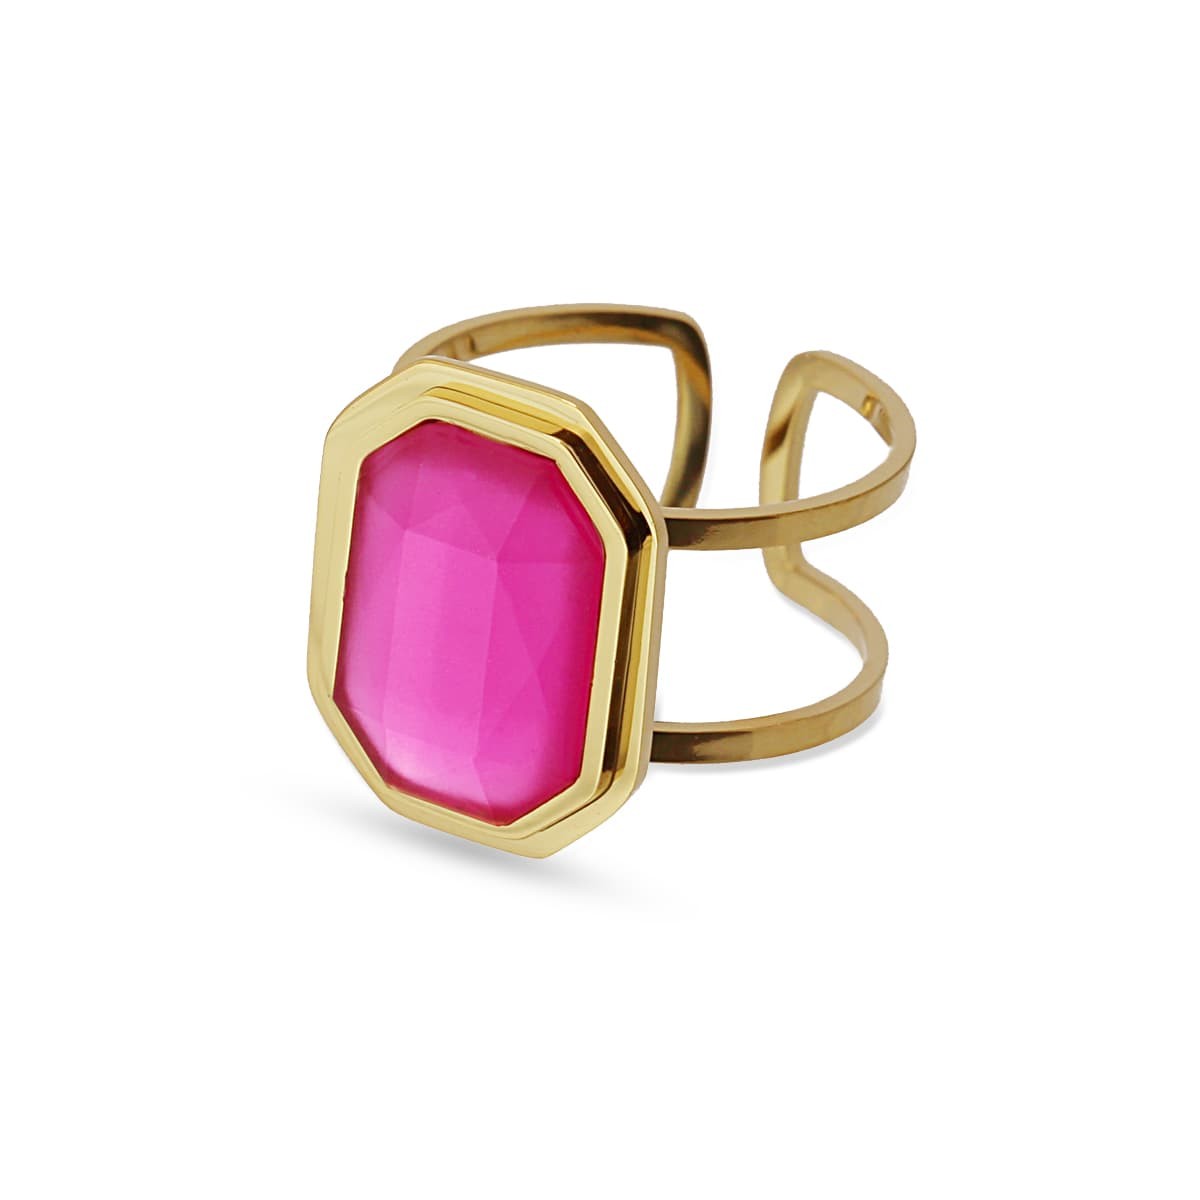 Maxi anillo dorado cadena eslabones acero quirúrgico plástico reciclado piedra coloreada rosa